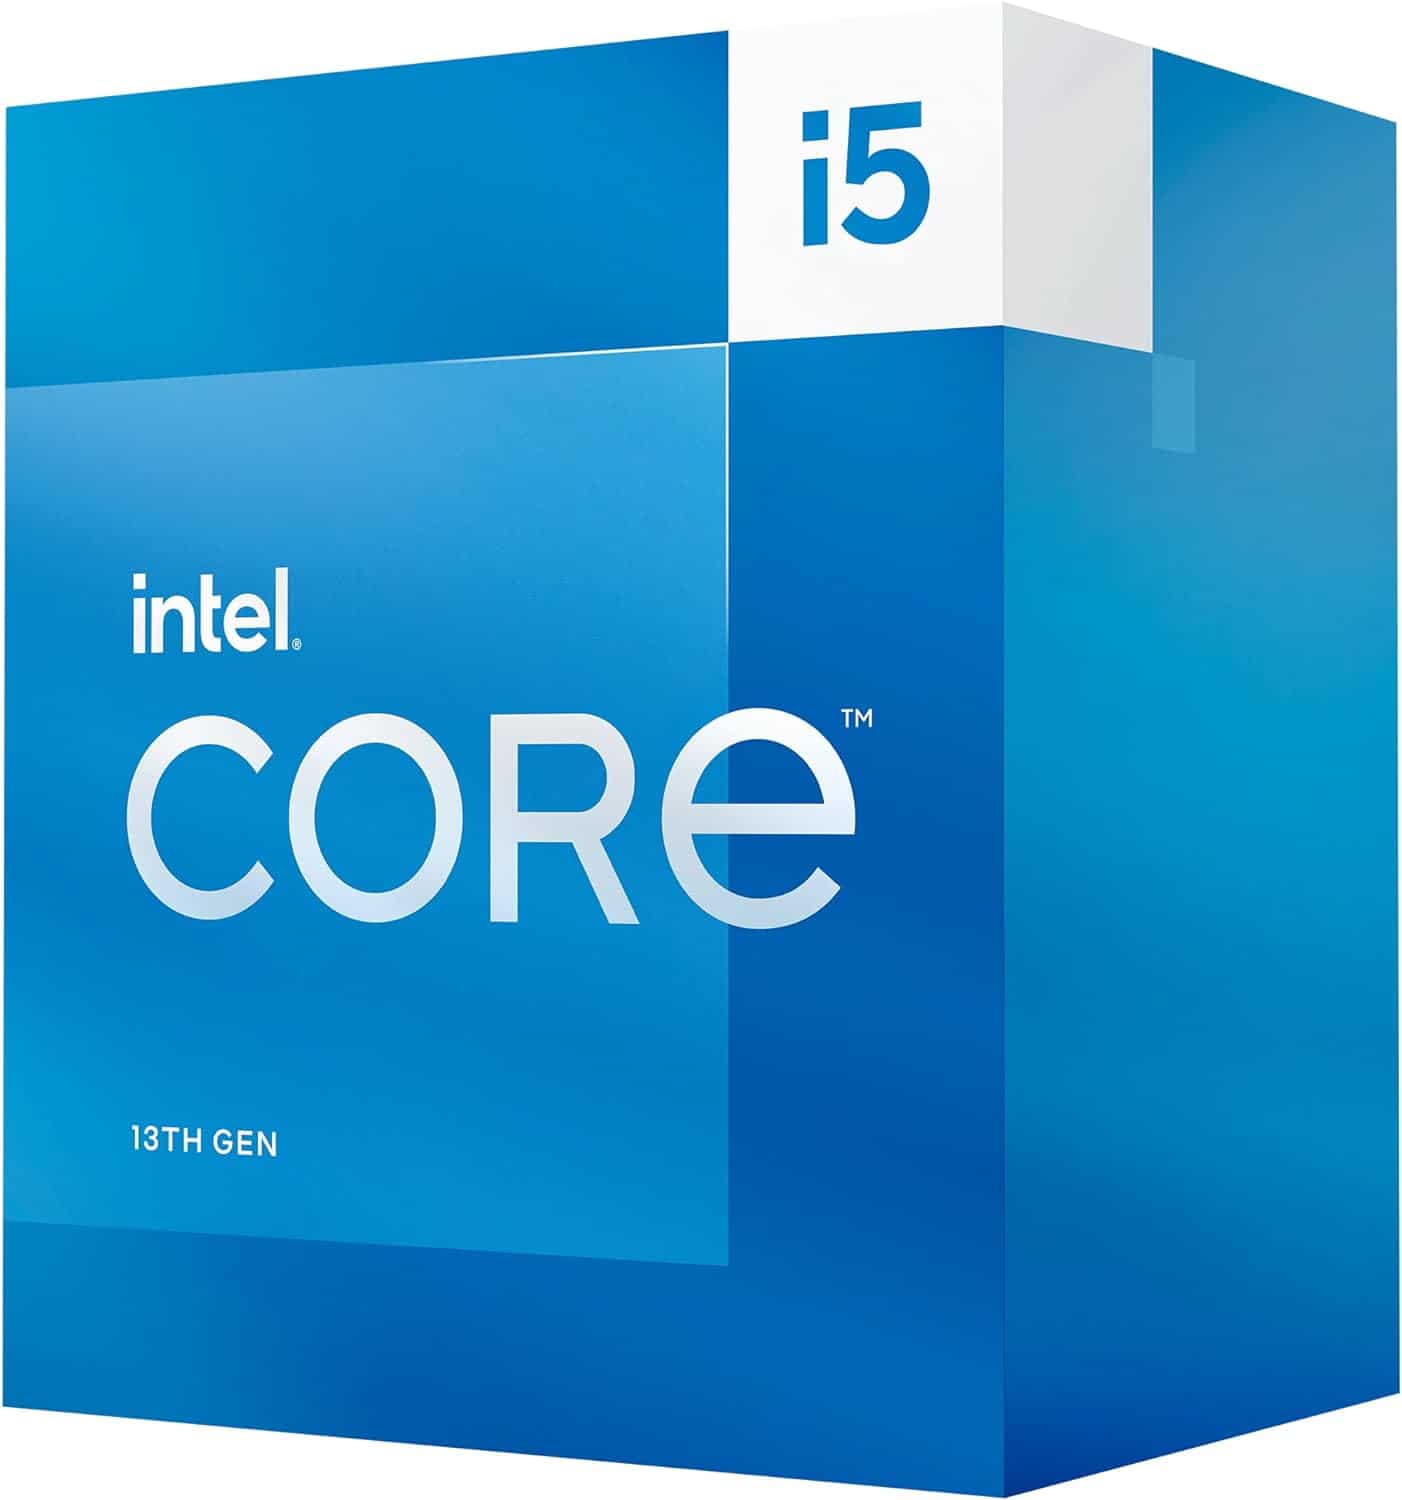 Intel Core i5-13400 processor box.